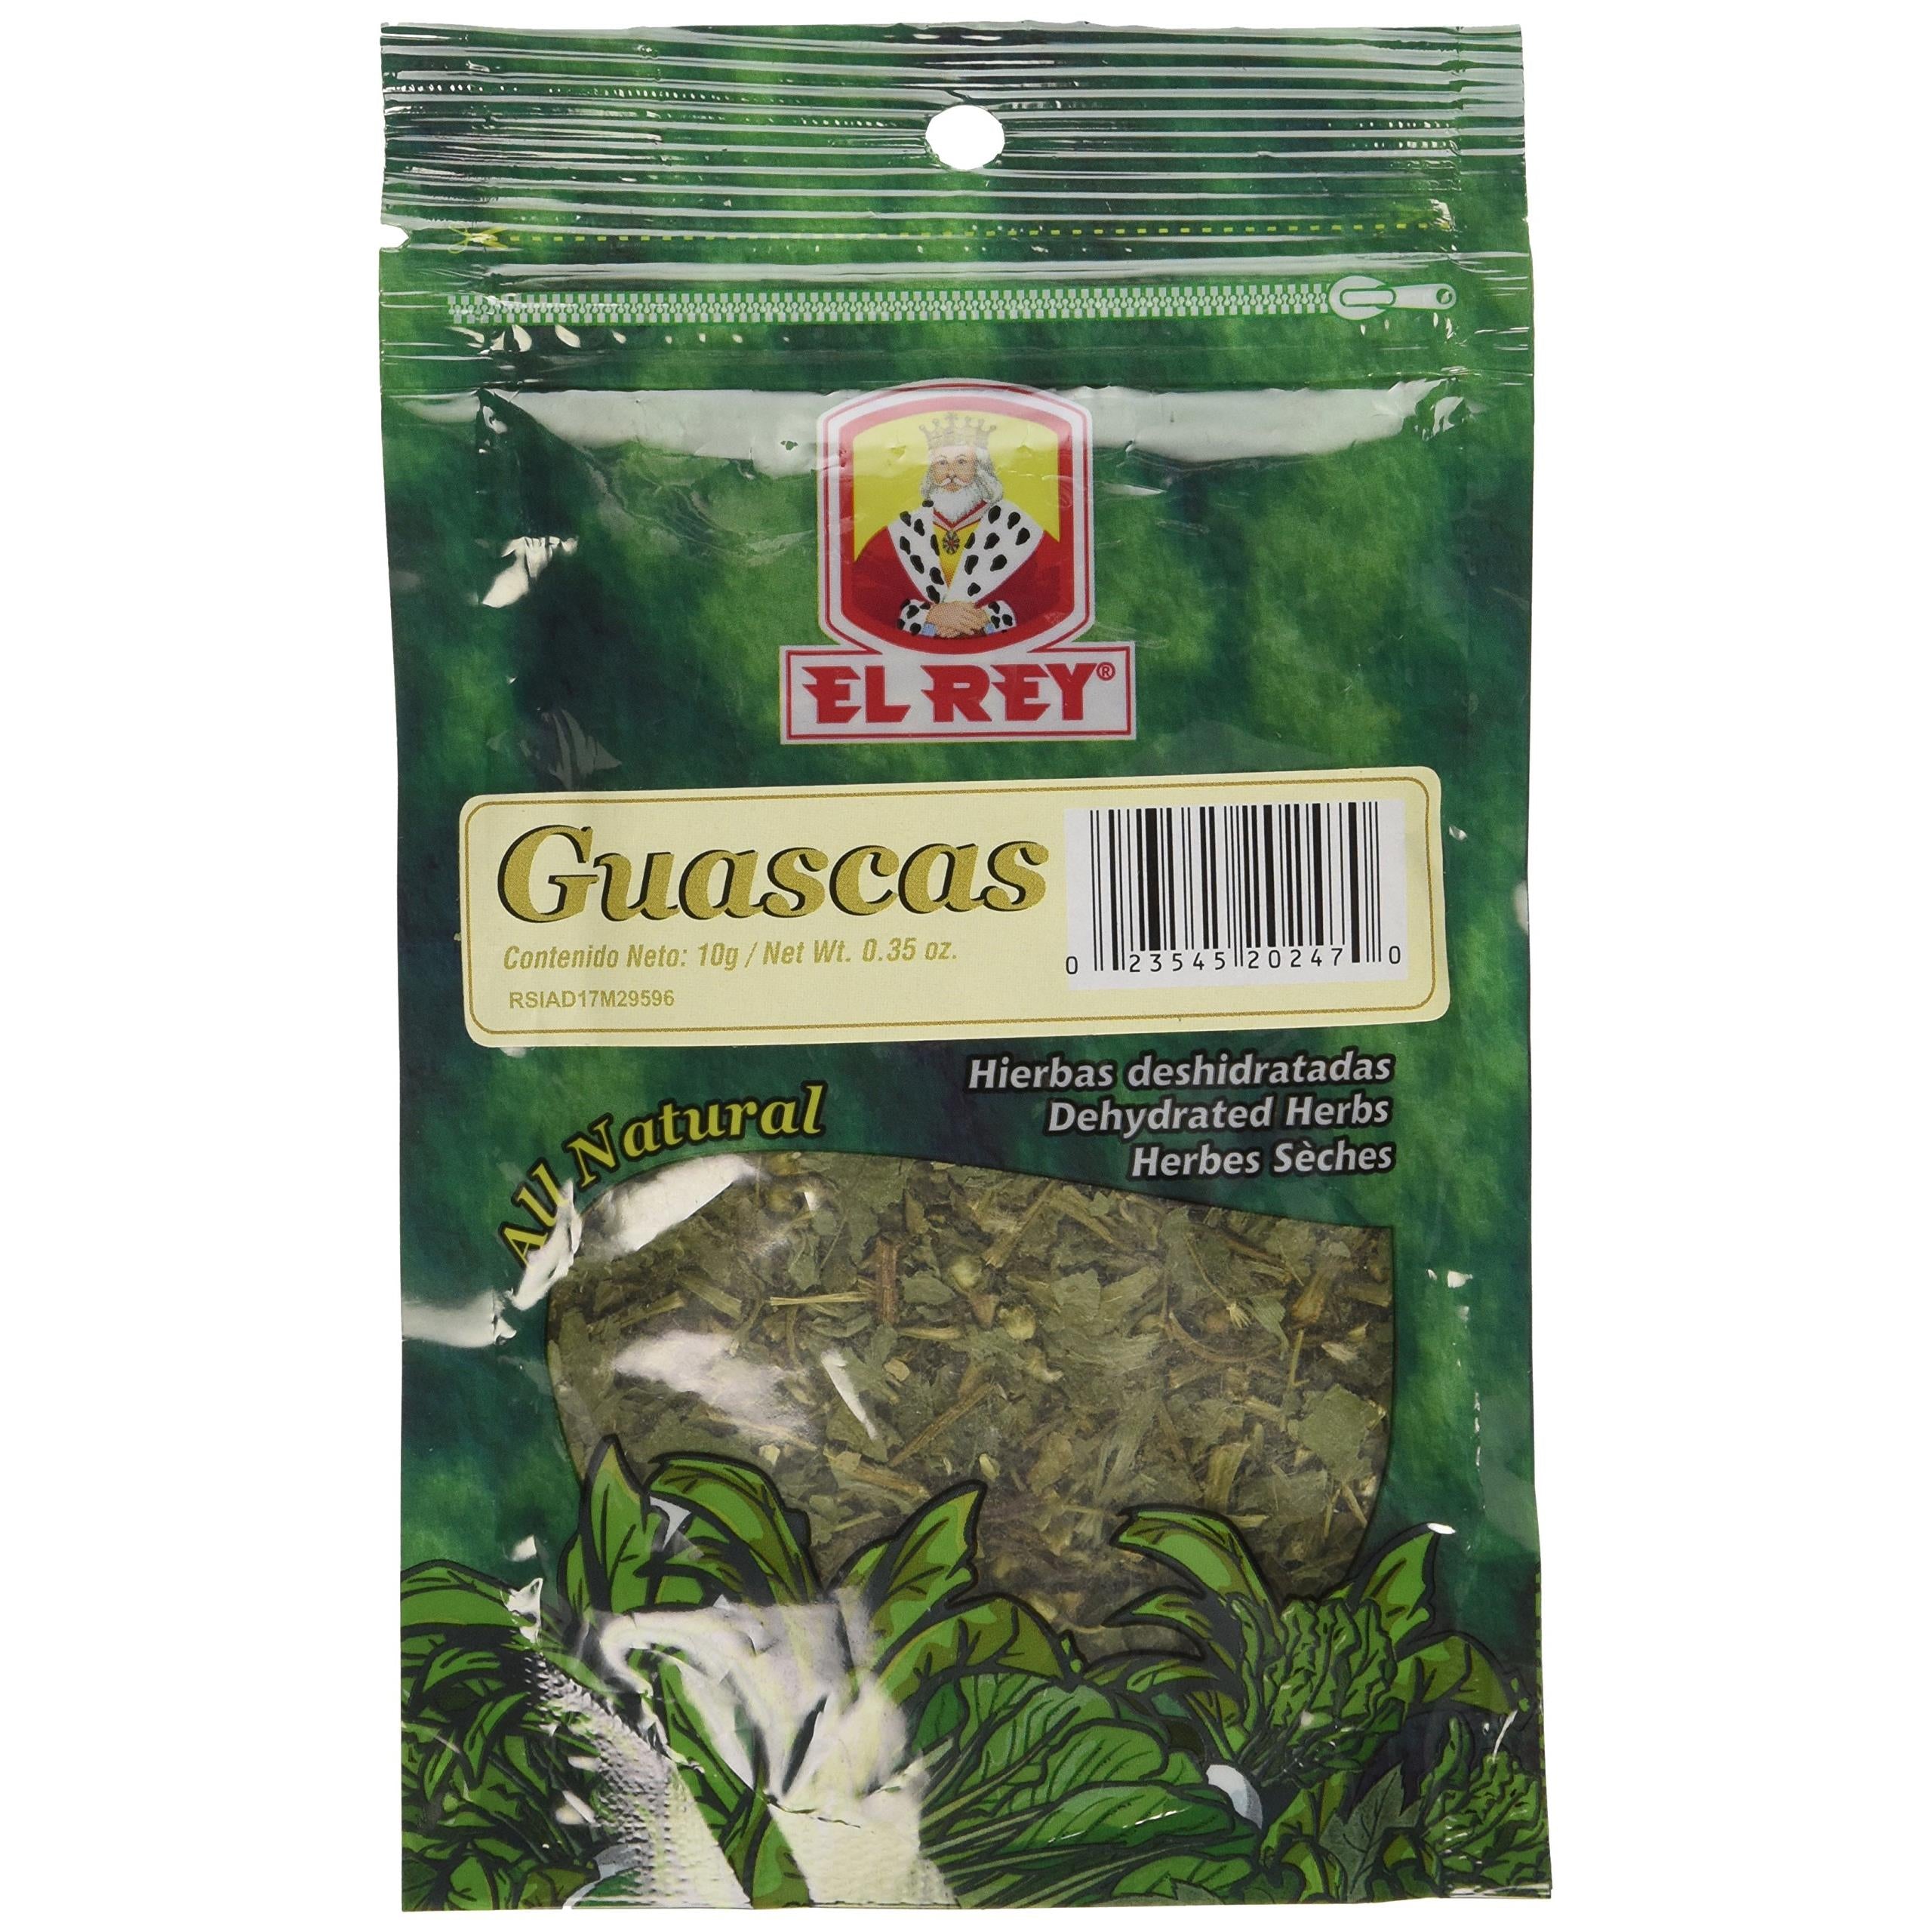 Guascas El Rey - Dehydrated Herbs - Hierbas Deshidratadas - Ajiaco